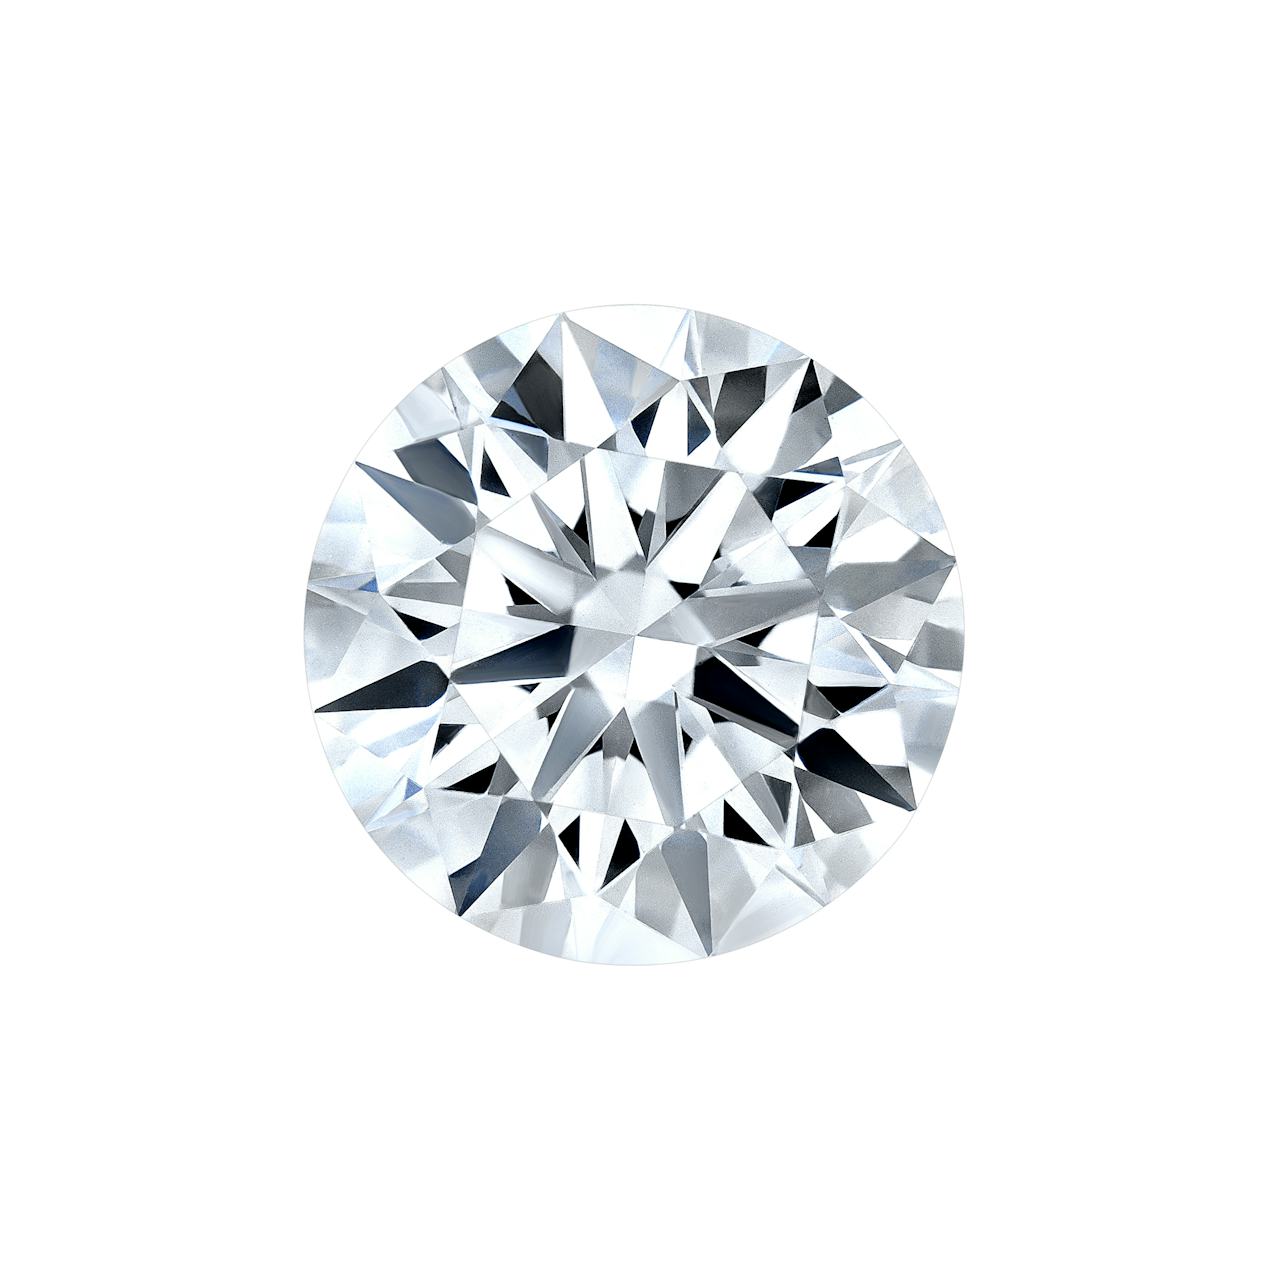 Close-up of Round Brilliant cut diamond